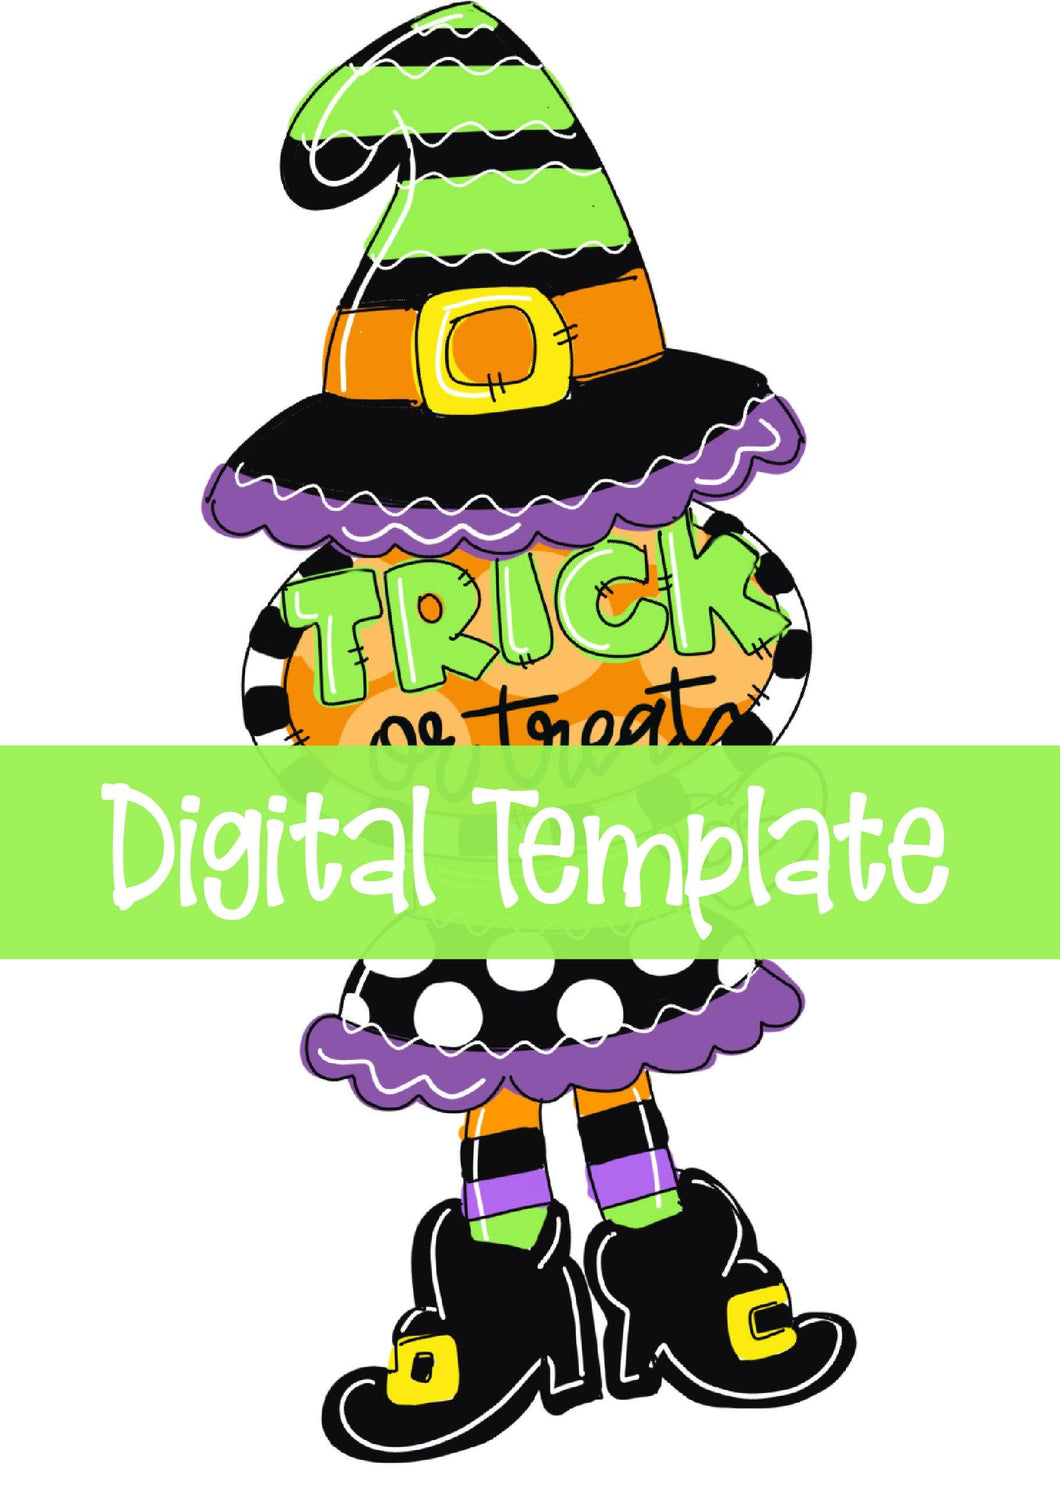 TEMPLATE:  Witch Trick or Treat Door Hanger Download Template - Printable Template - DoorBadges